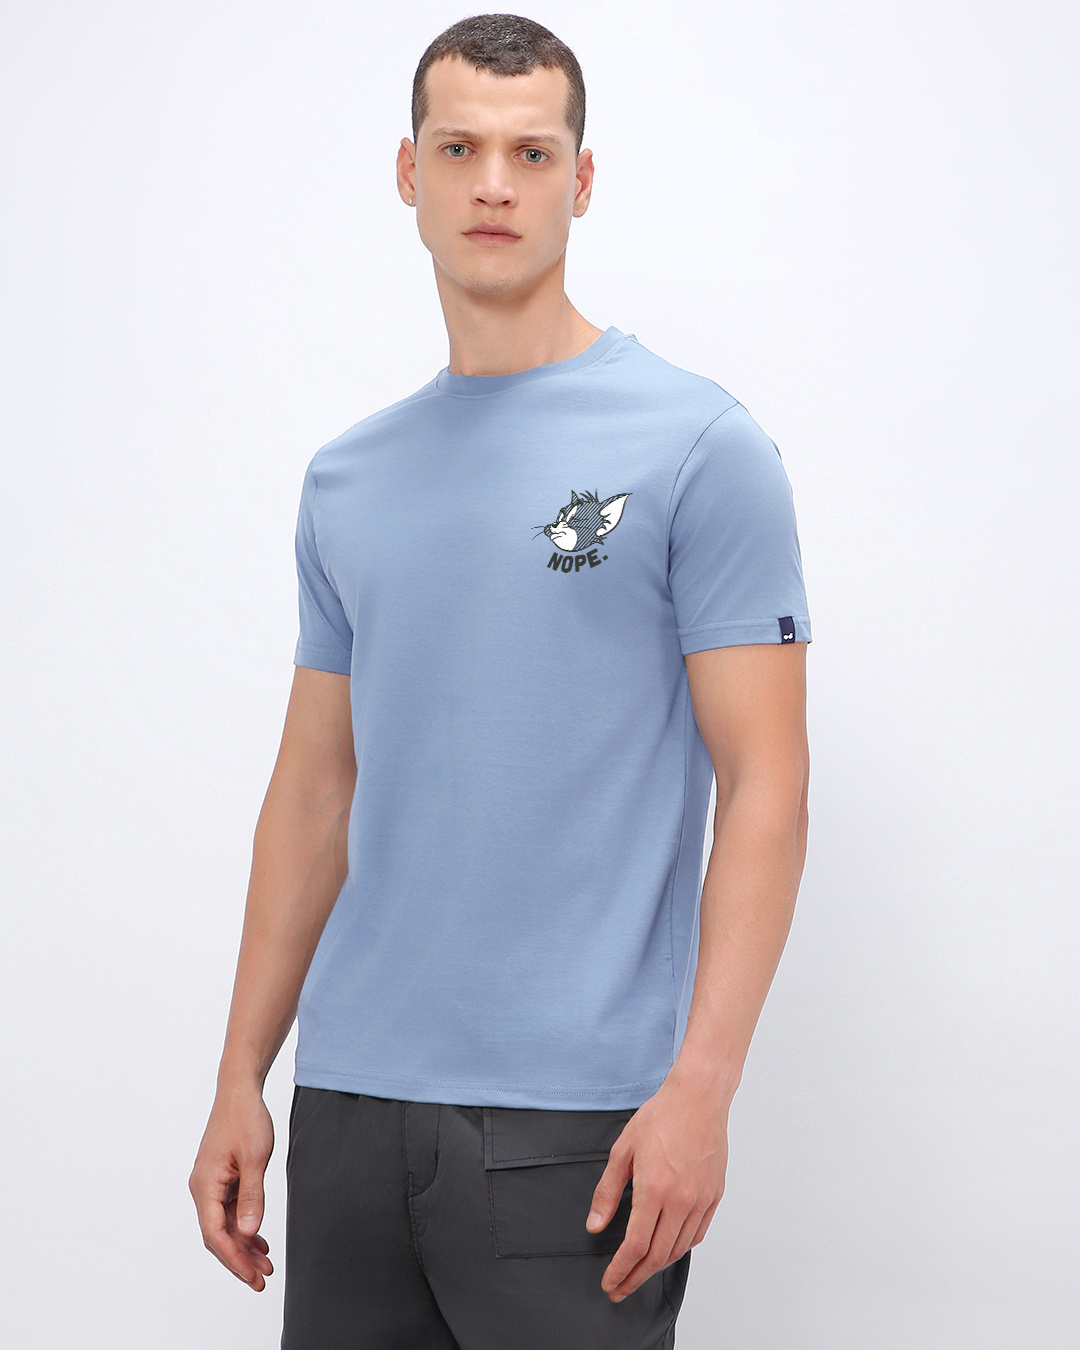 Buy Men's Blue Nope Graphic Printed T-shirt Online at Bewakoof